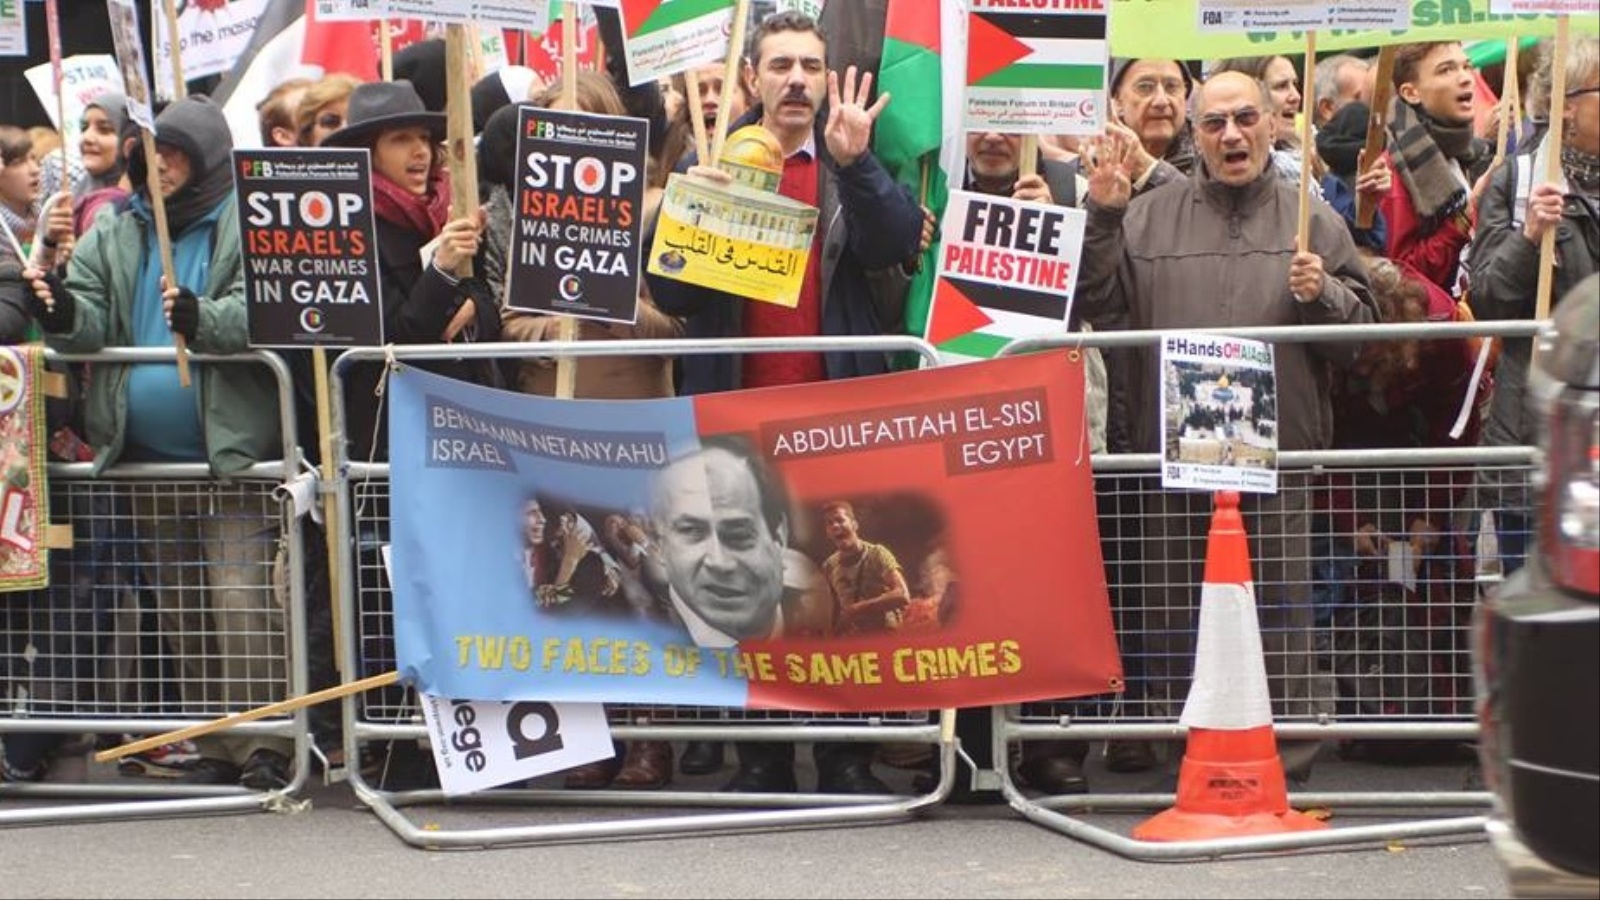 المتحدثون بالمظاهرة وصفوا ما يجري في الأراضي الفلسطينية بأنه انتفاضة ثالثة (الجزيرة)